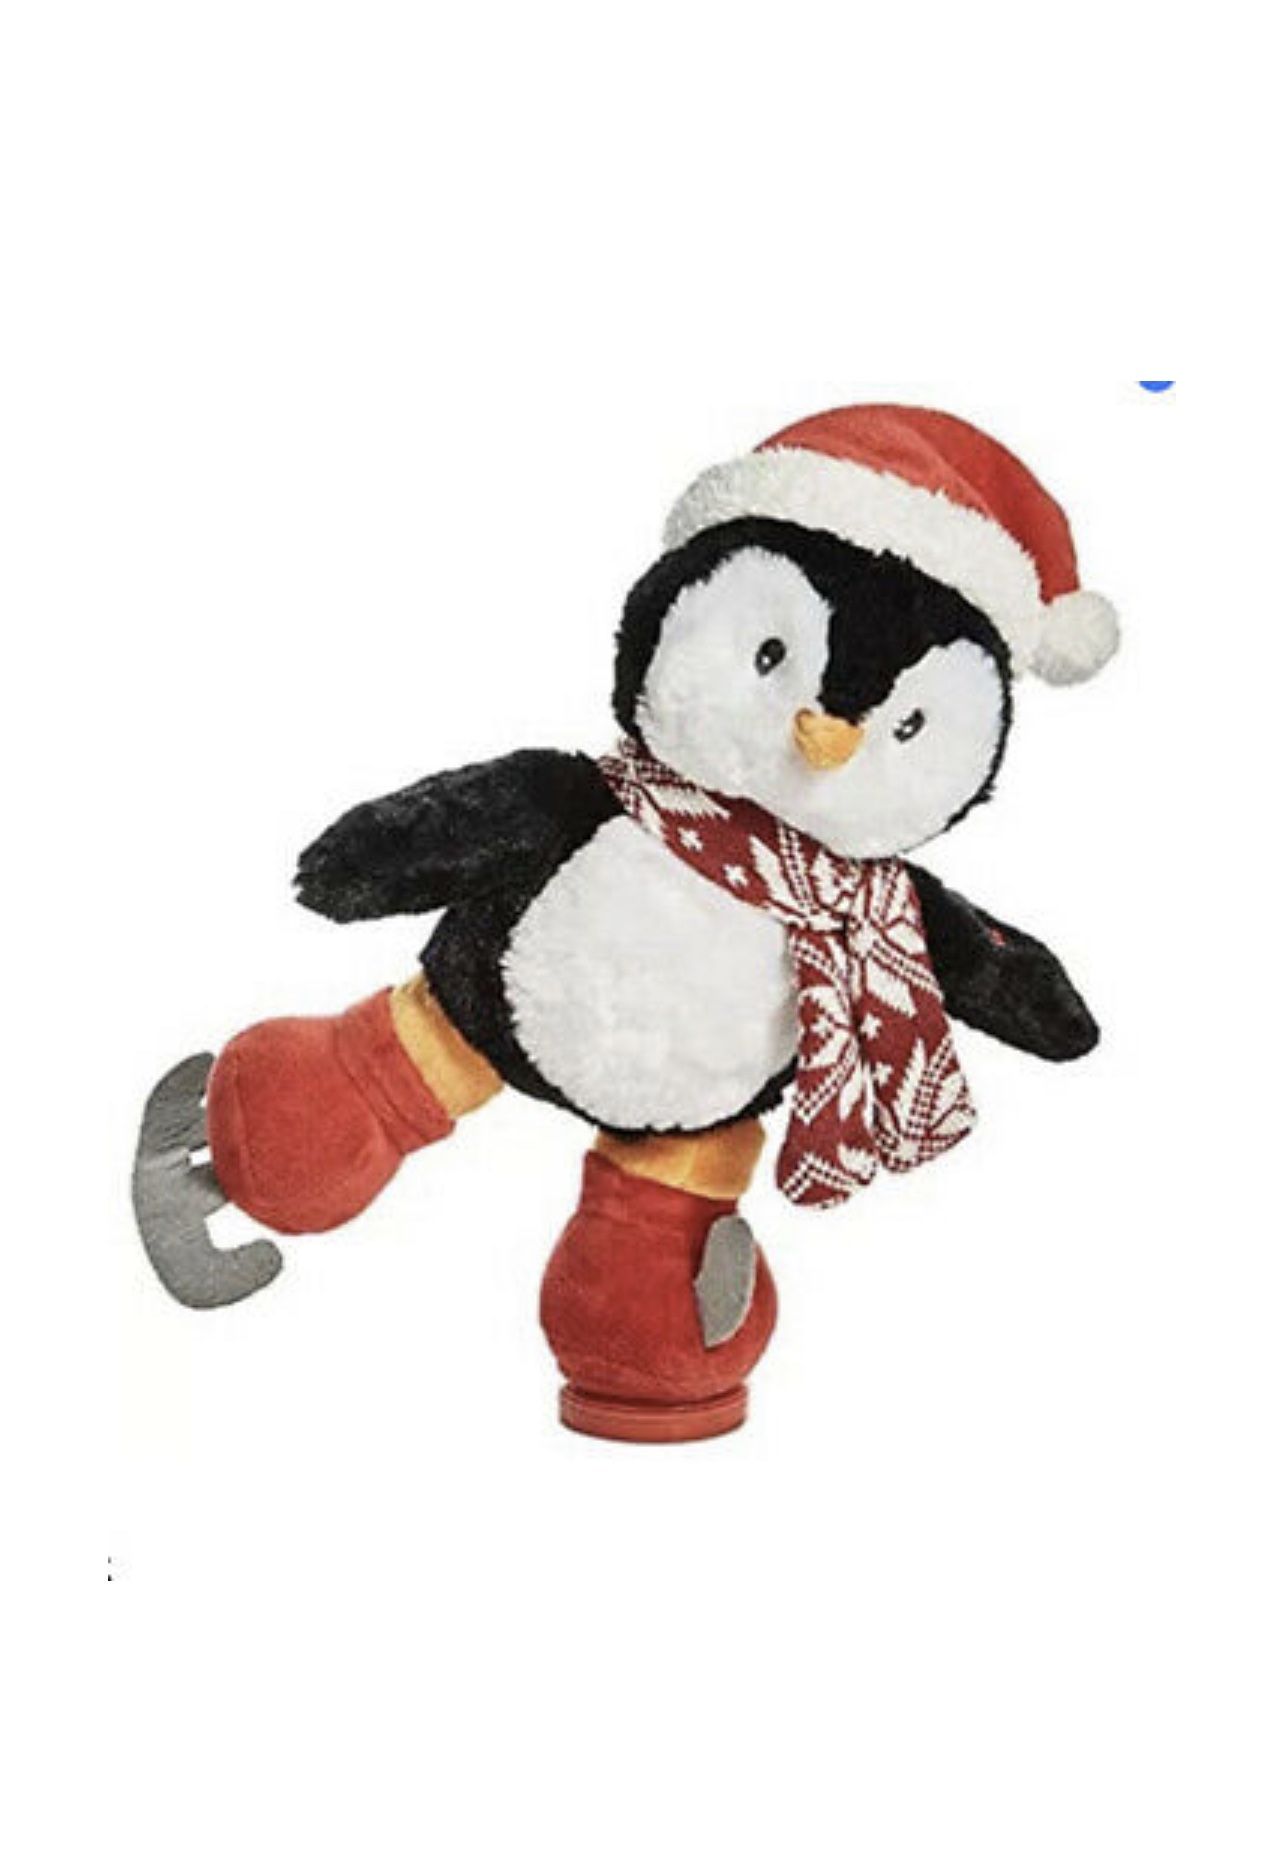 Holiday Lane Animated Musical Plush Ice Skating Penguin